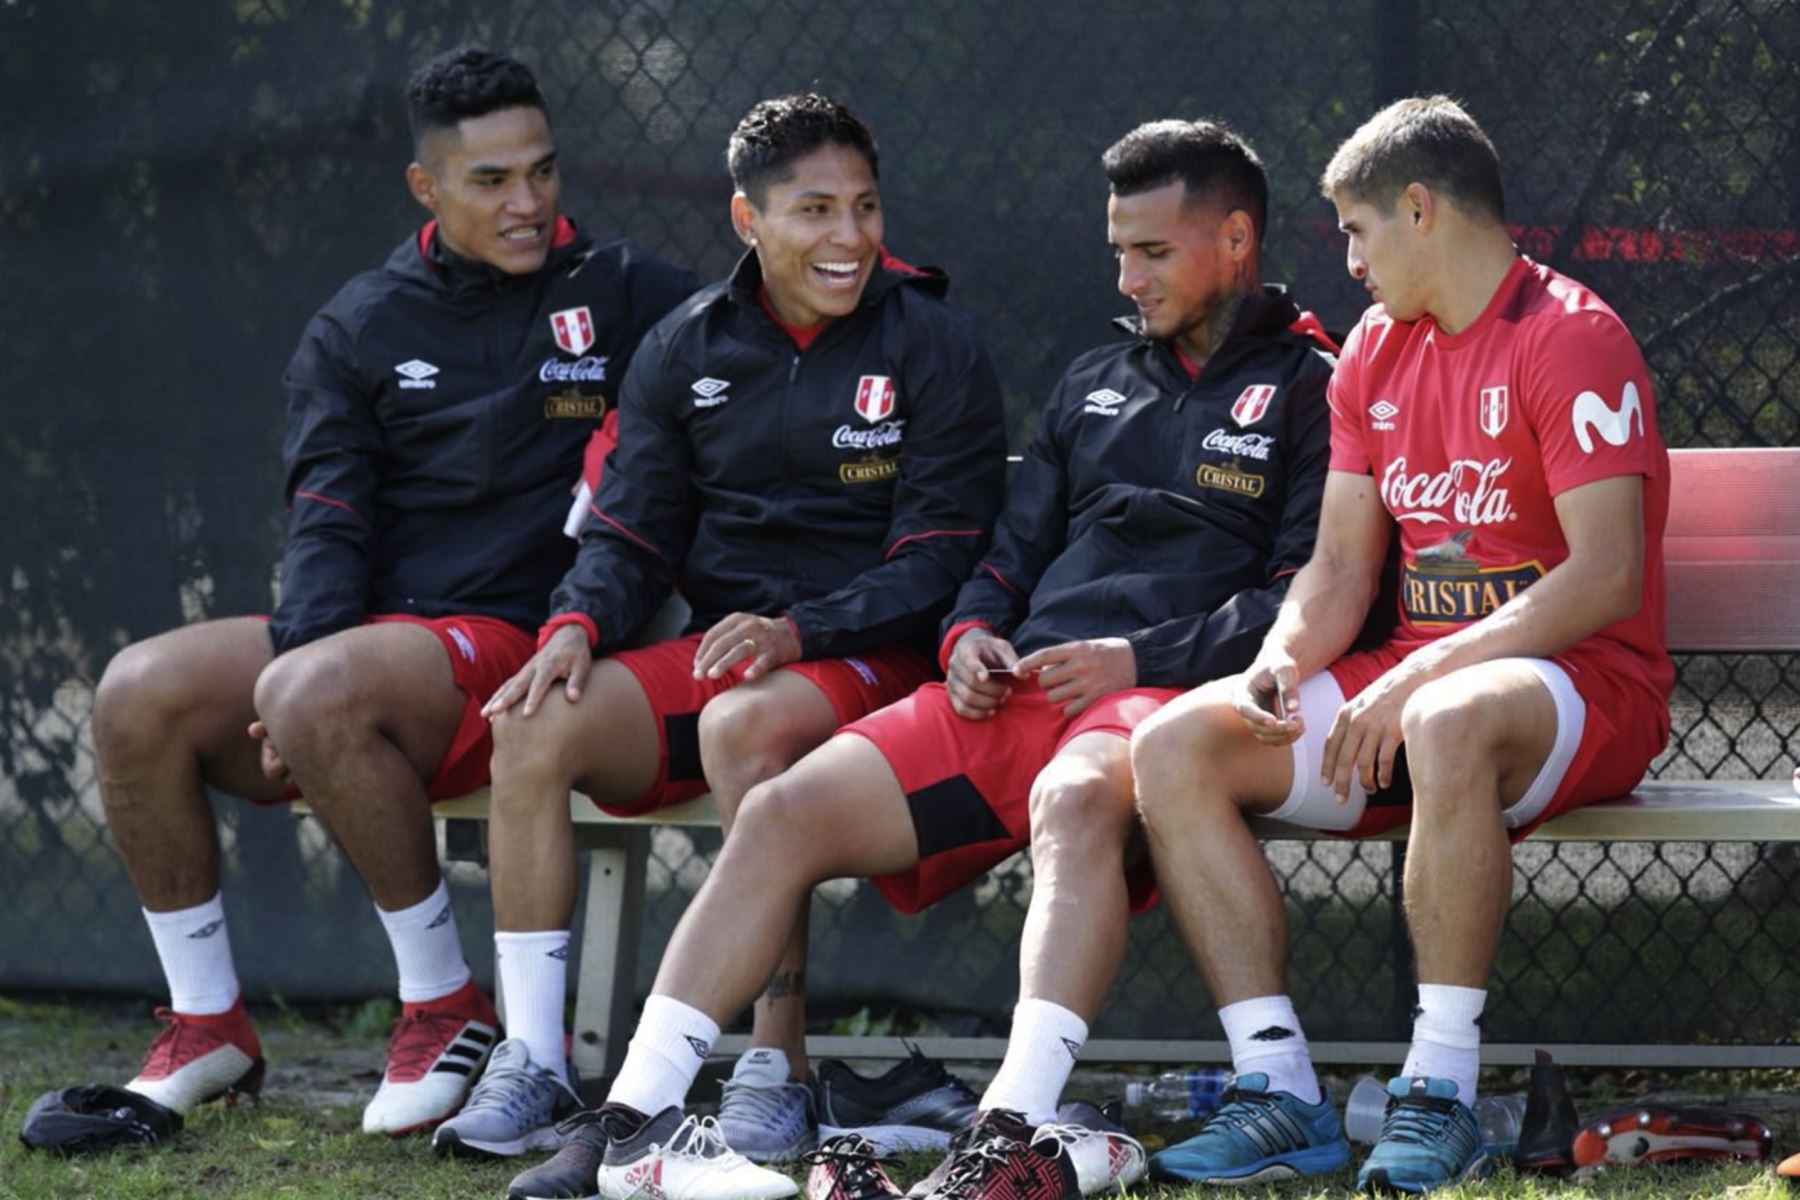 La selección peruana realizó su entrenamiento en Fort Lauderdale, Miami, bajo las órdenes del técnico Ricardo Gareca. Foto: ANDINA/Twiter FPF.